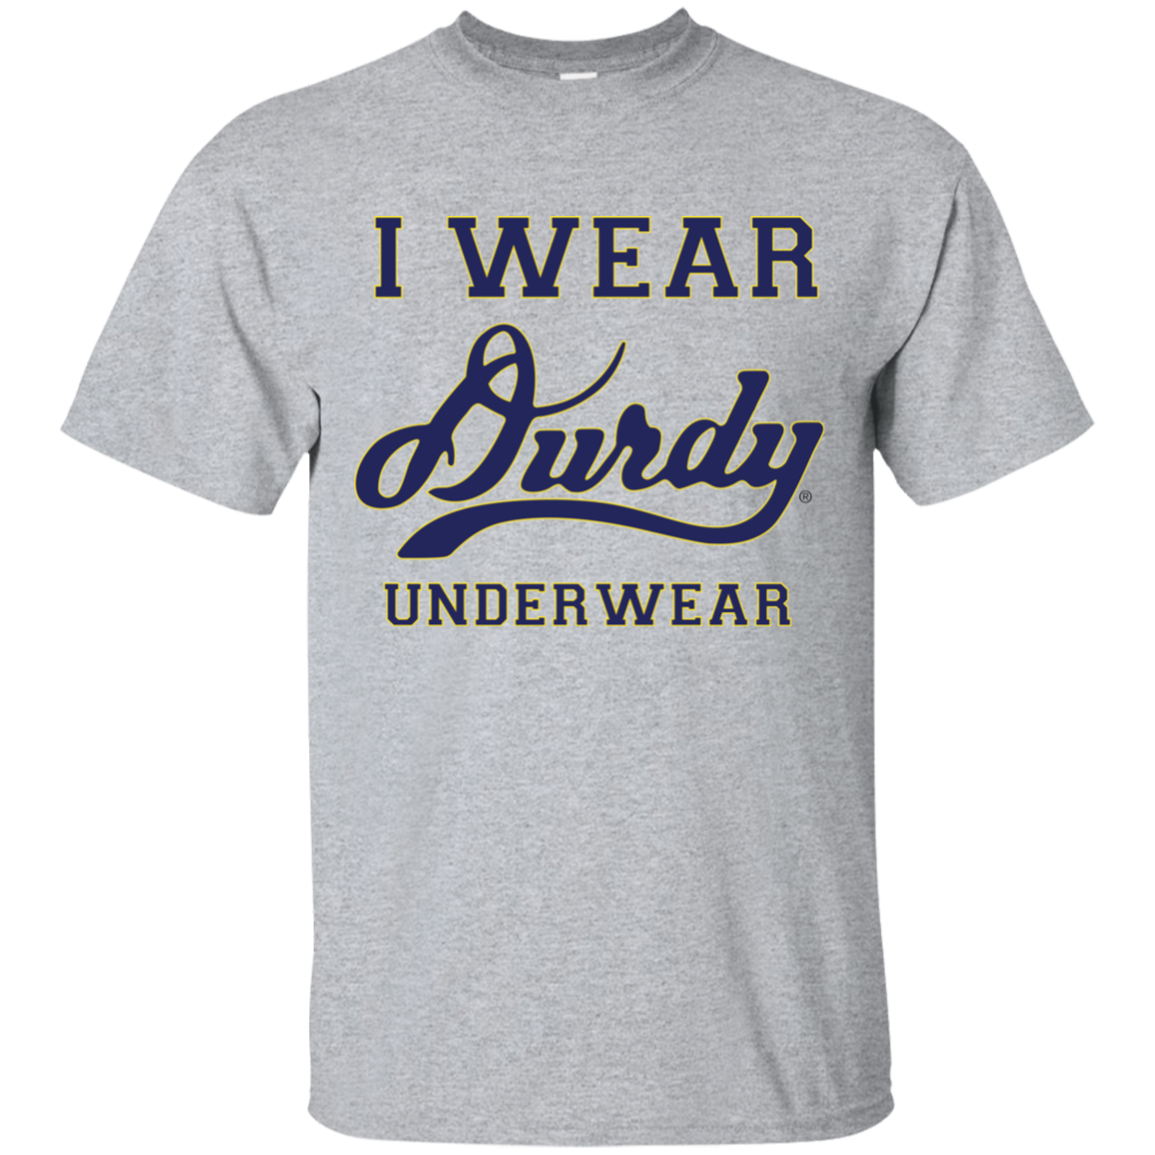 I Wear Durdy Underwear Gildan Ultra Cotton T-Shirt